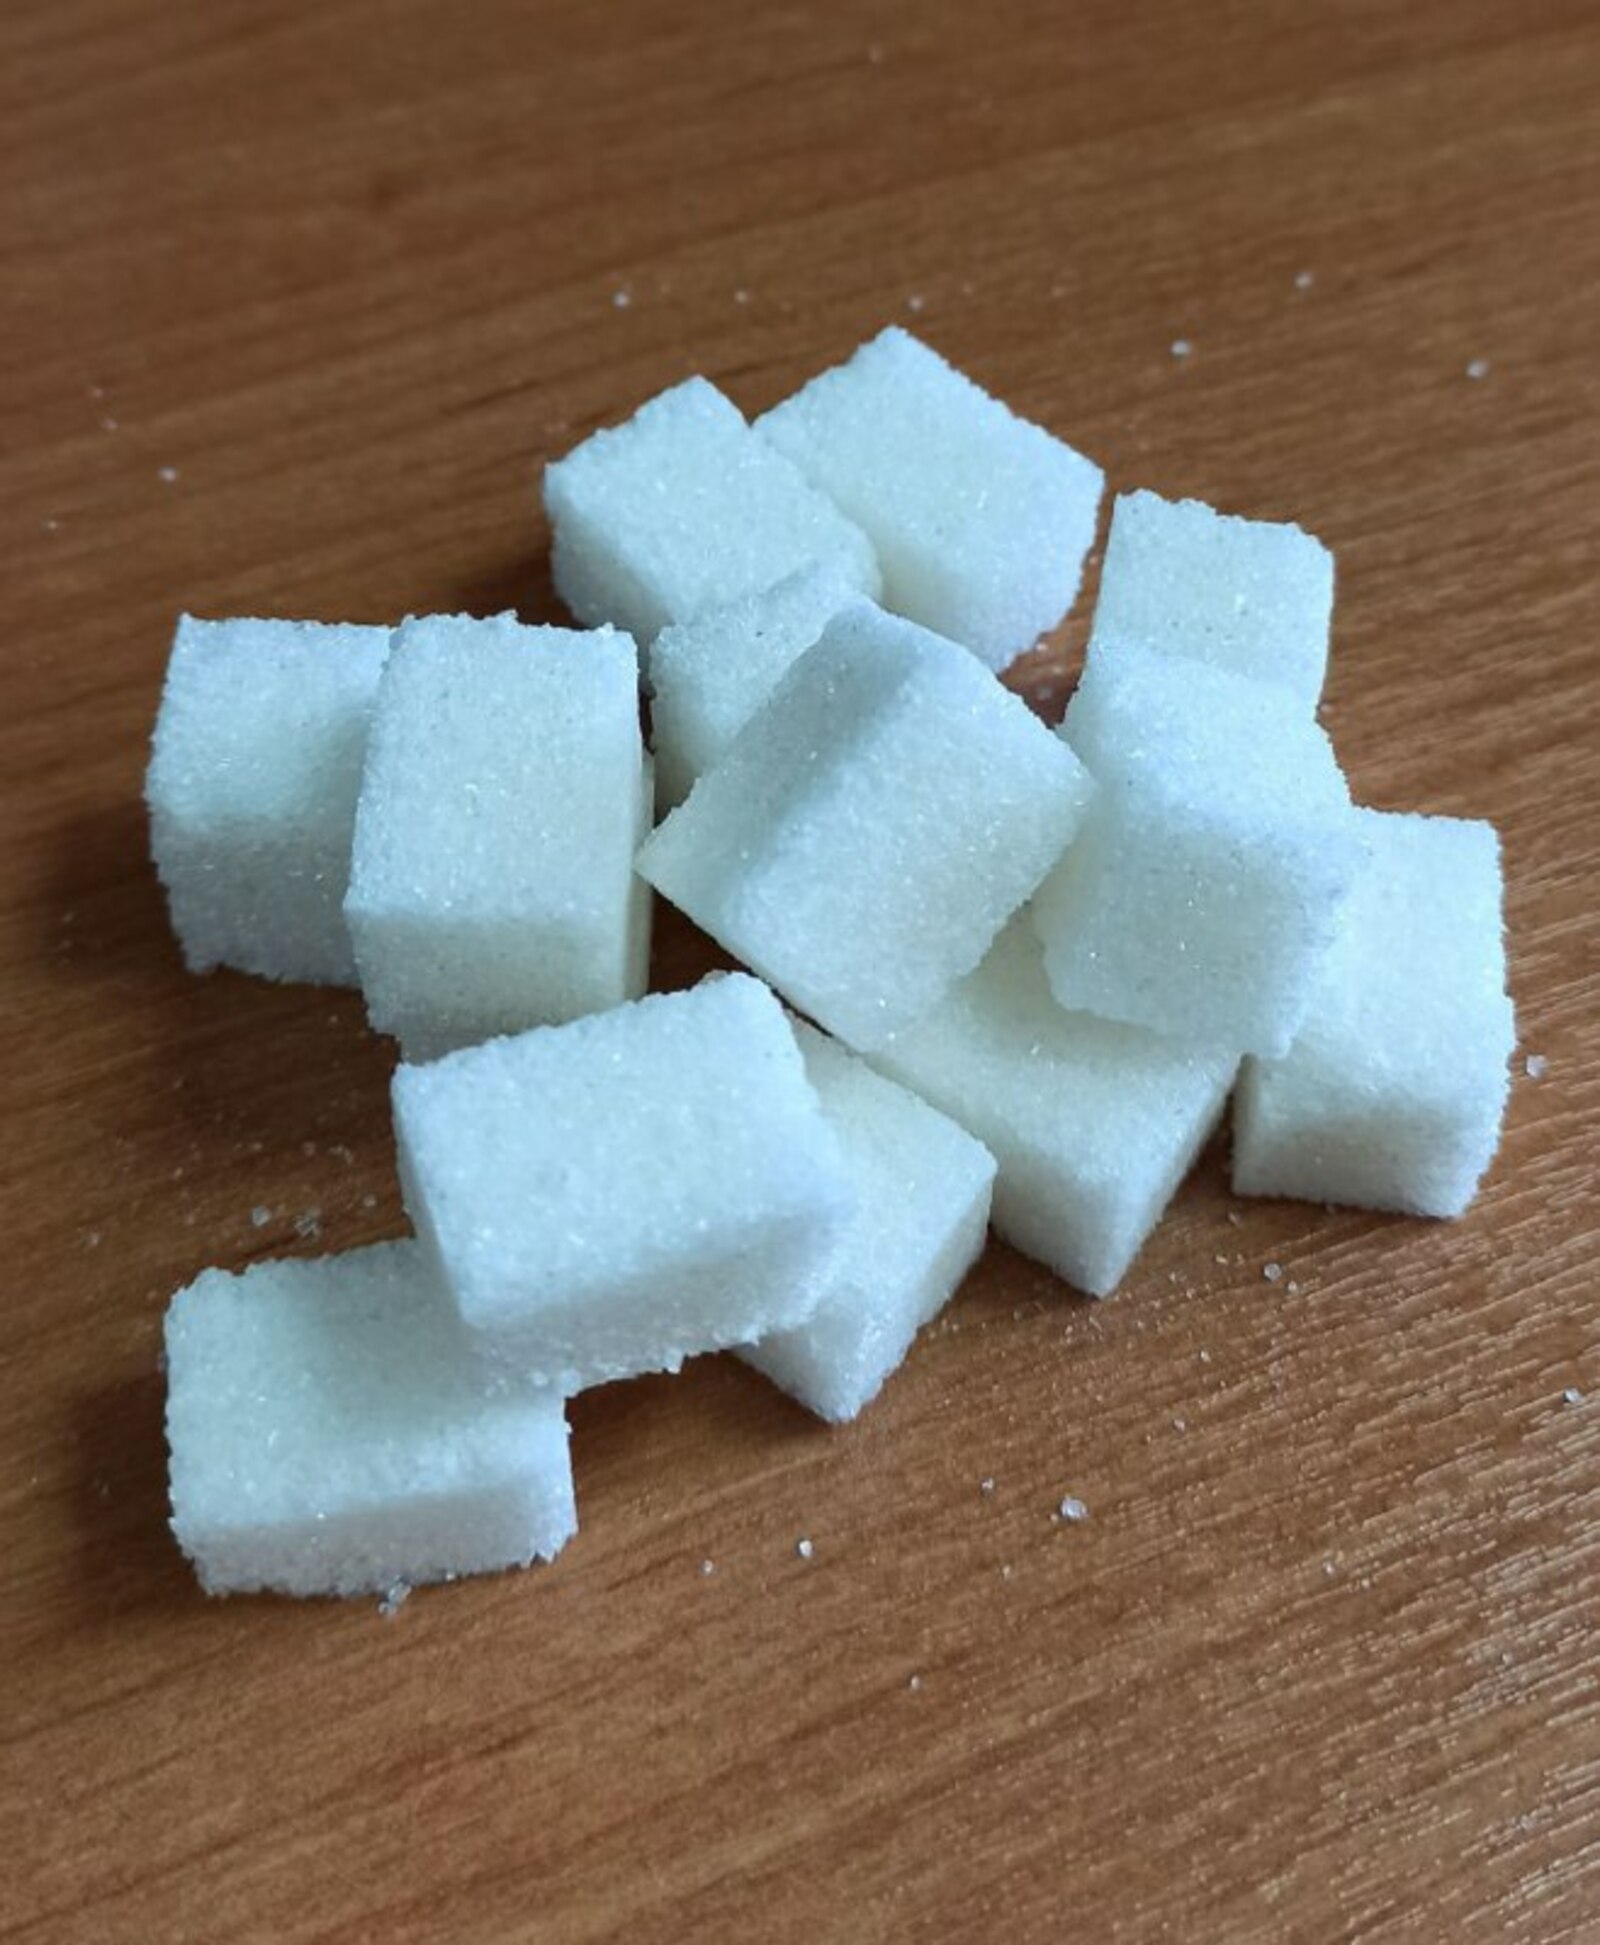 Минсельхоз Башкирии просит не создавать искусственный ажиотаж вокруг сахара и круп